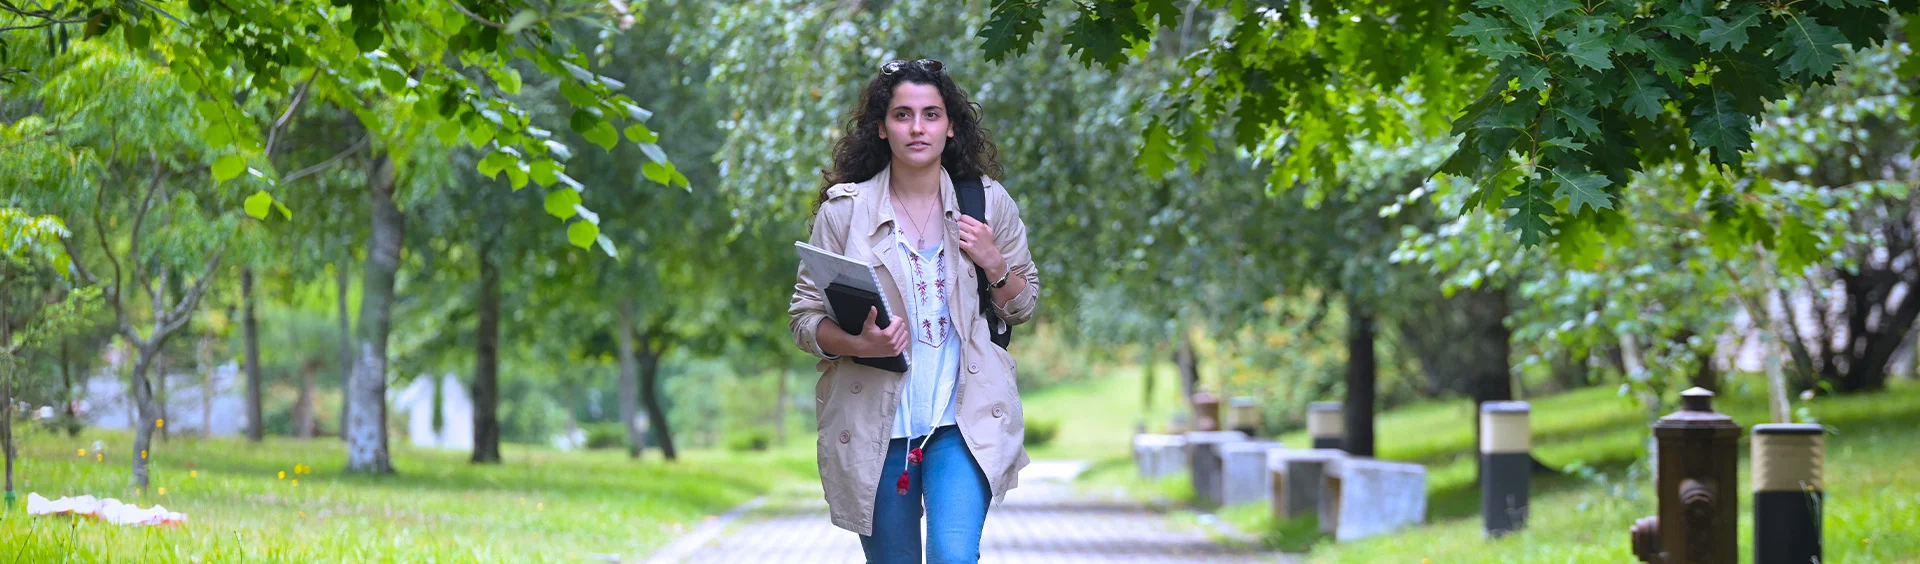 Estudante a caminhar nos jardins do campus da Faculdade de Ciências da Universidade do Porto com livros na mão